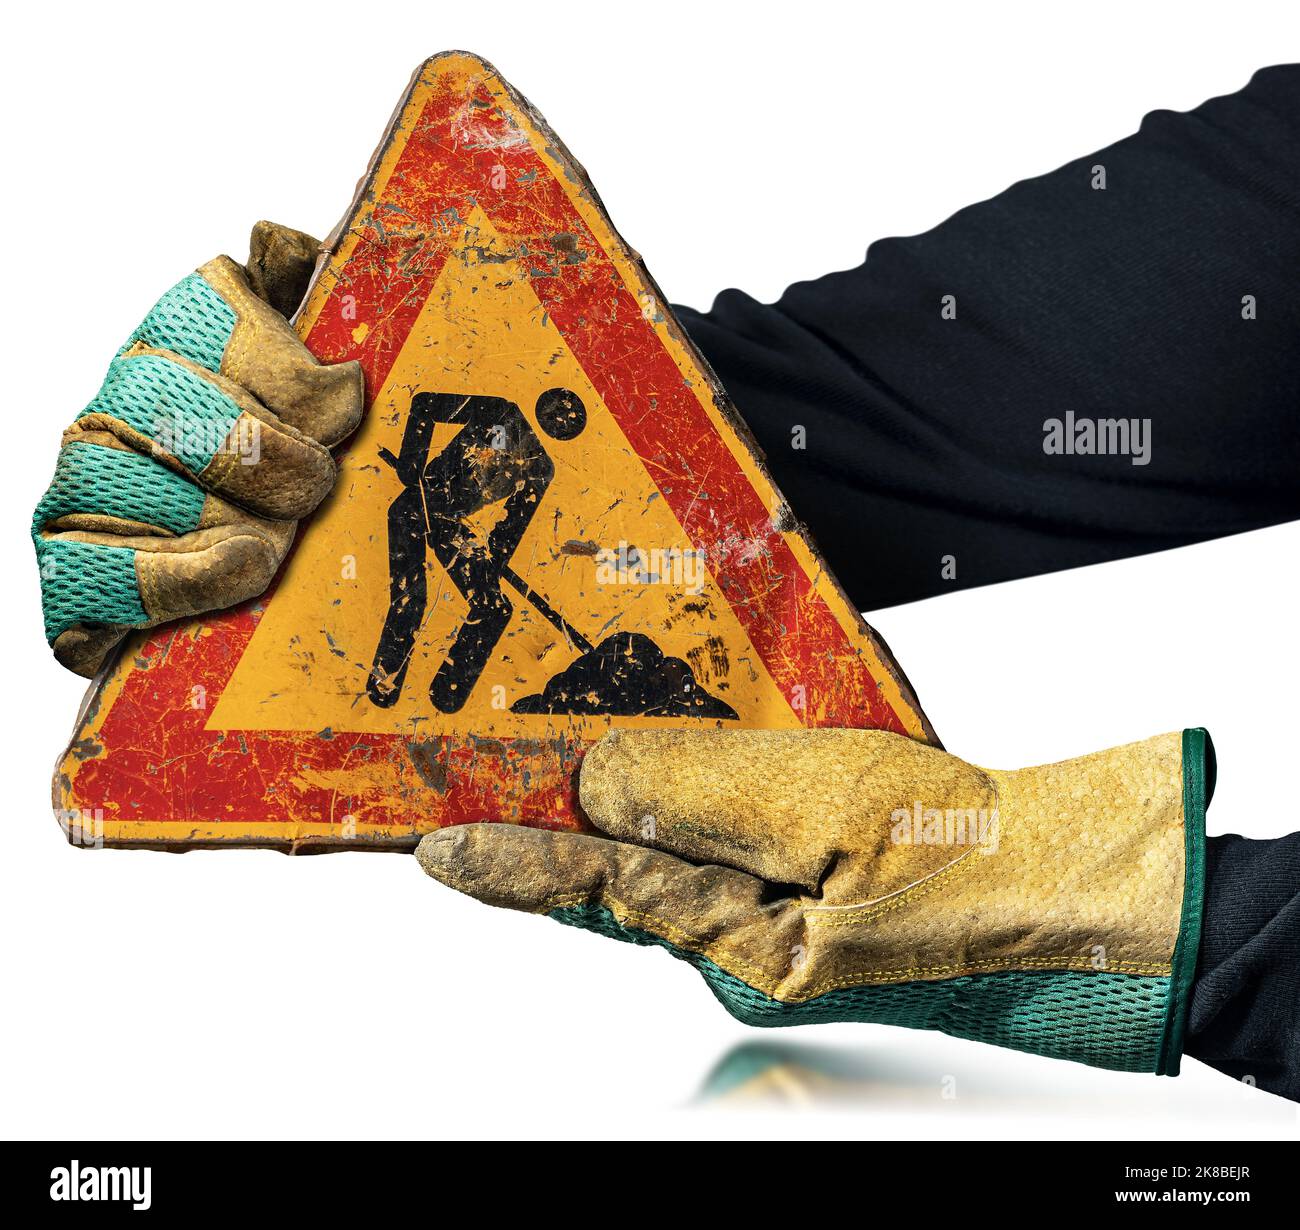 Operatore manuale con guanti da lavoro protettivi che tiene un cartello stradale Work in Progress (uomo sul lavoro), isolato su sfondo bianco, fotografia. Foto Stock